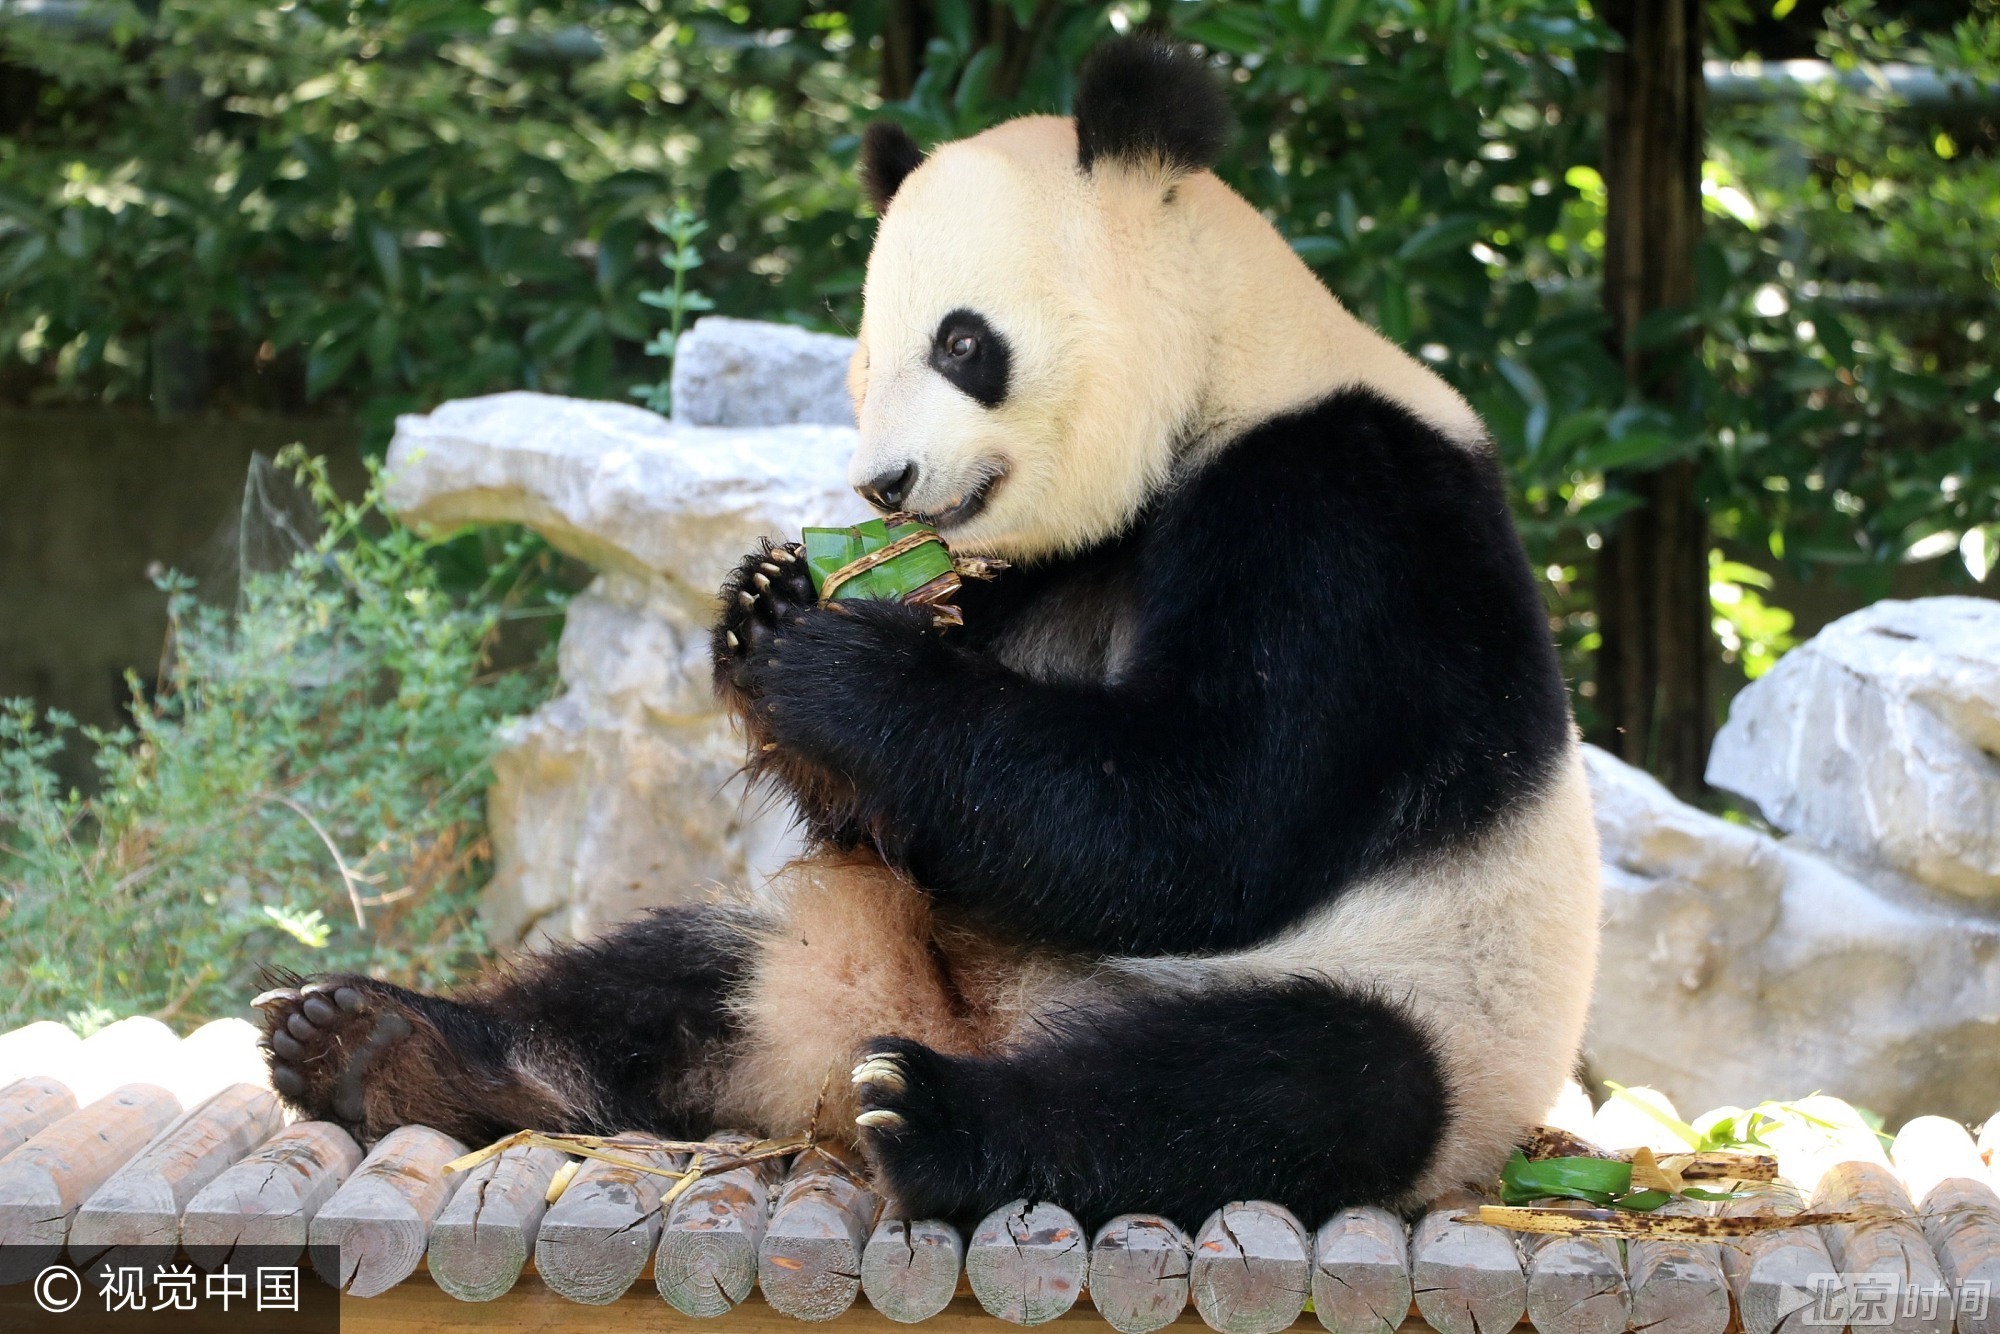 2017年5月26日， 我国传统节日端午节临近，当日，扬州茱萸湾动物园的饲养员用窝窝头、竹粉、苹果等食材为大熊猫、袋鼠等动物精心制作了特殊的粽子，让它们享受美食迎接端午。